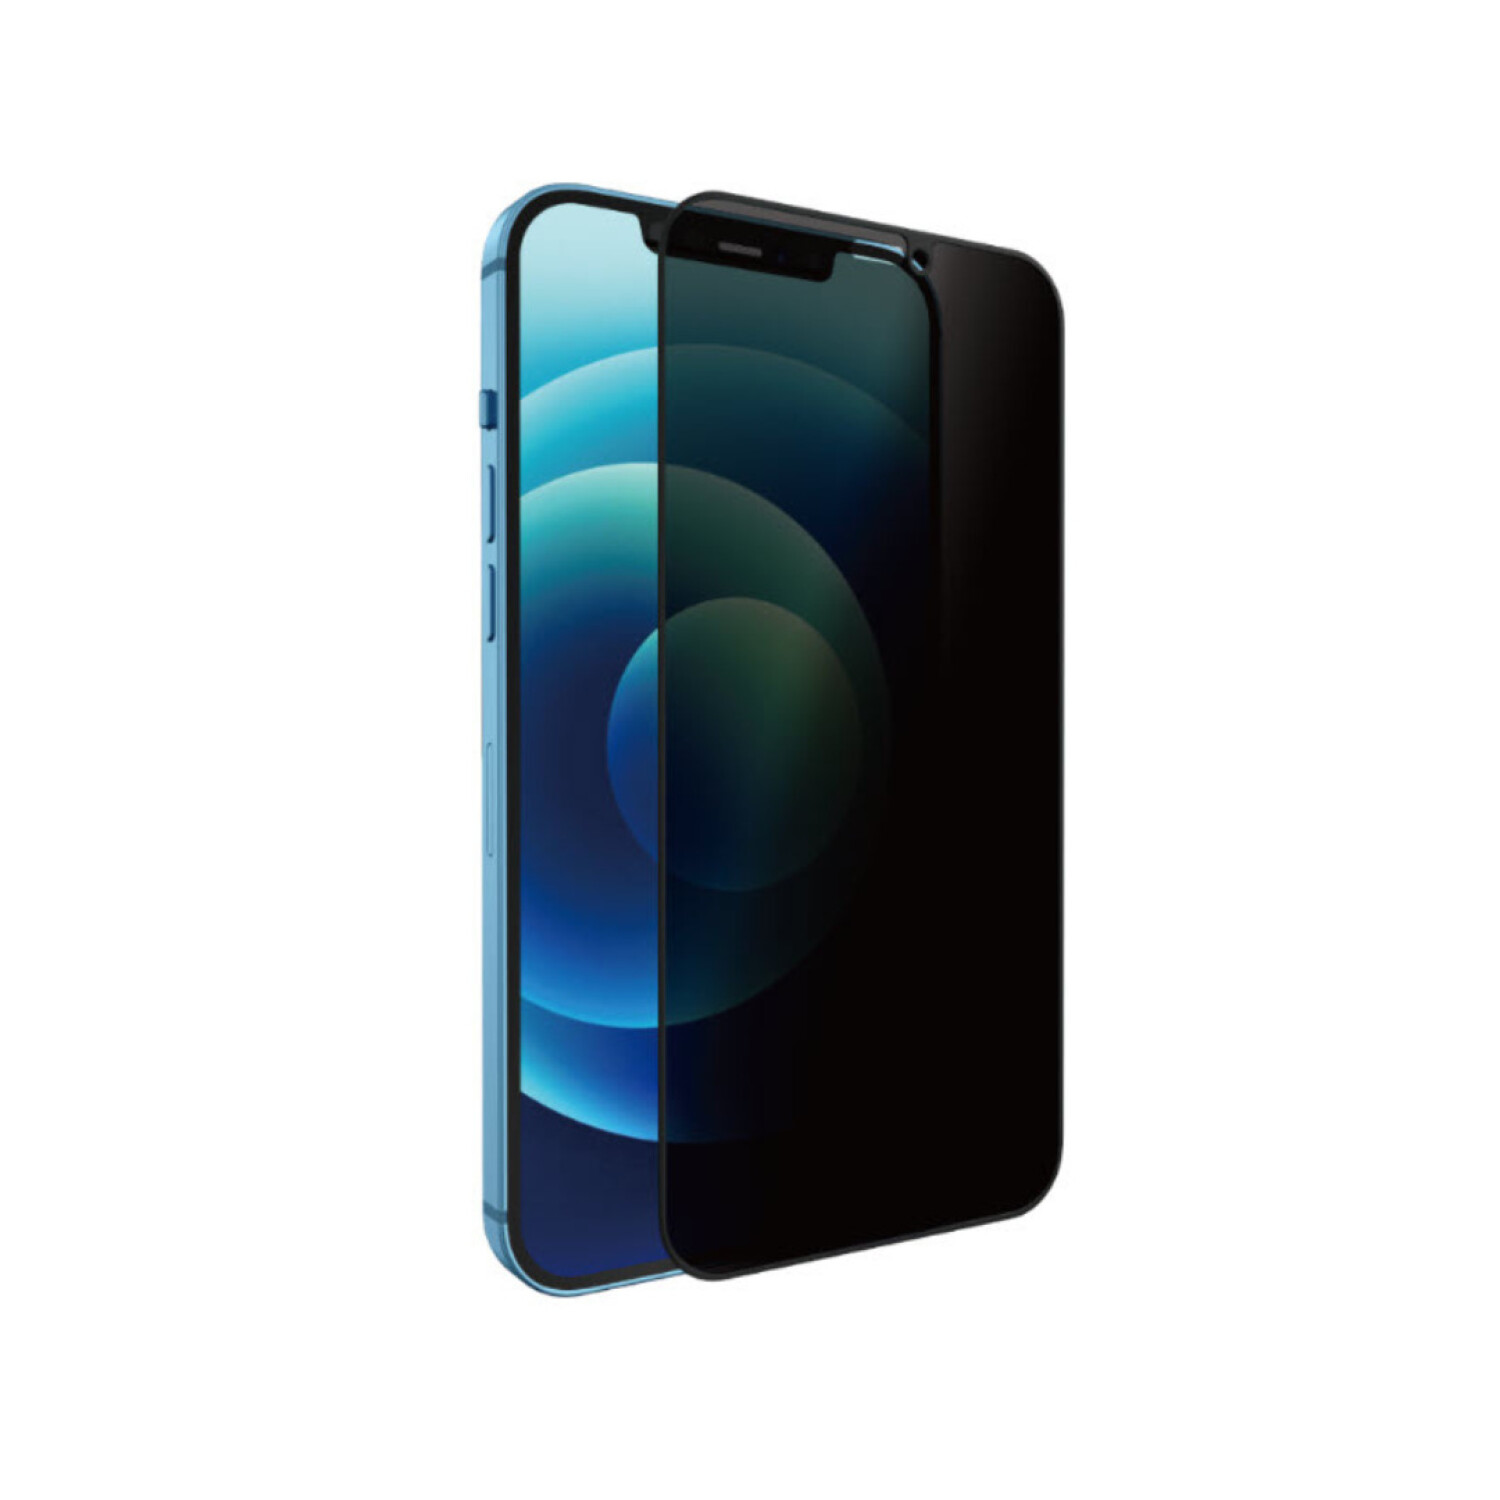 Cristal Templado 3D (Anti espía) para iPhone 11 Pro Max / XS Max